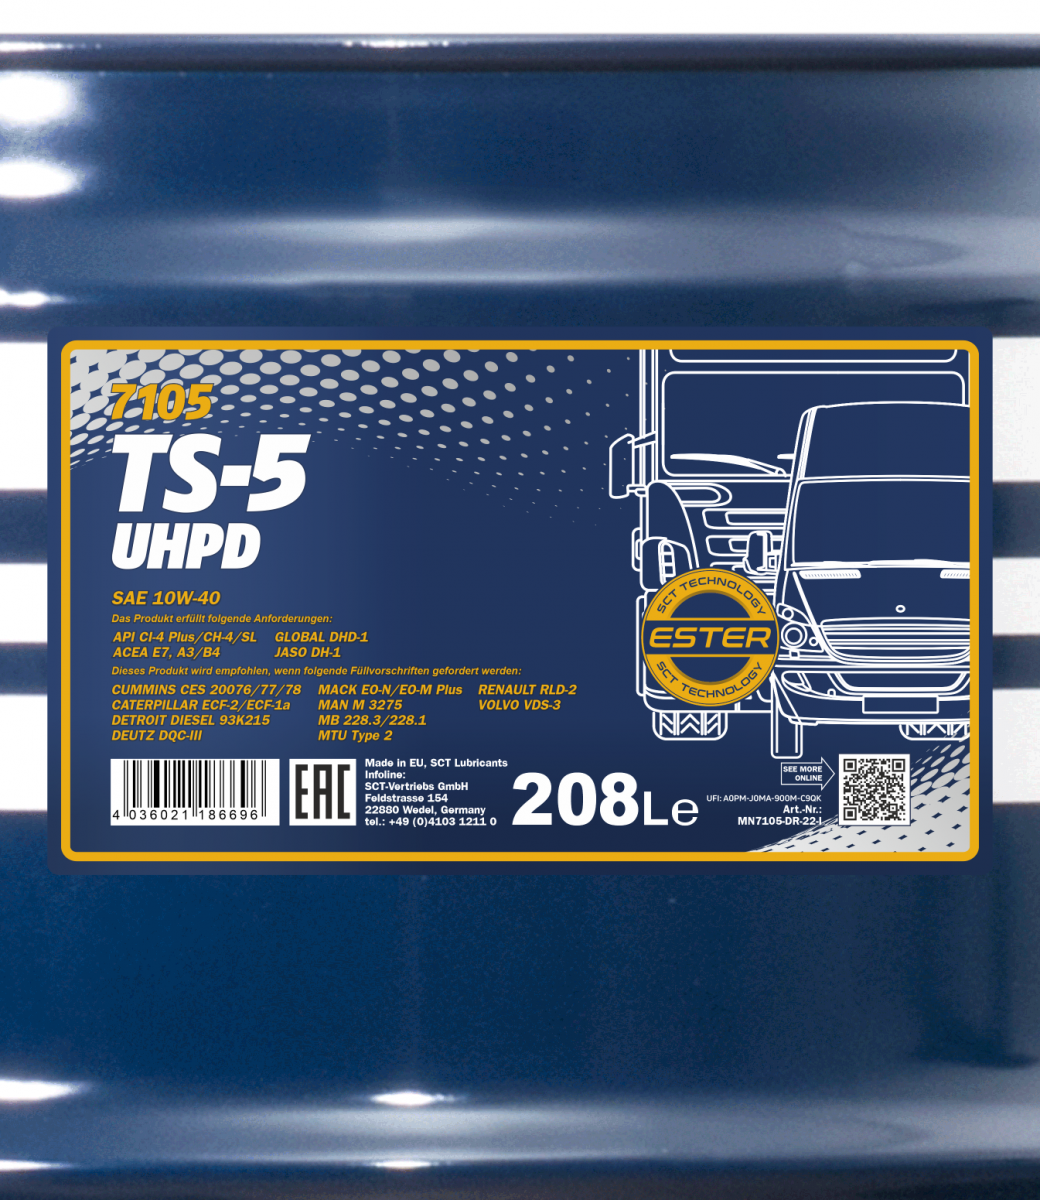 10W-40 Mannol 7105 TS-5 UHPD Motoröl 208 Liter